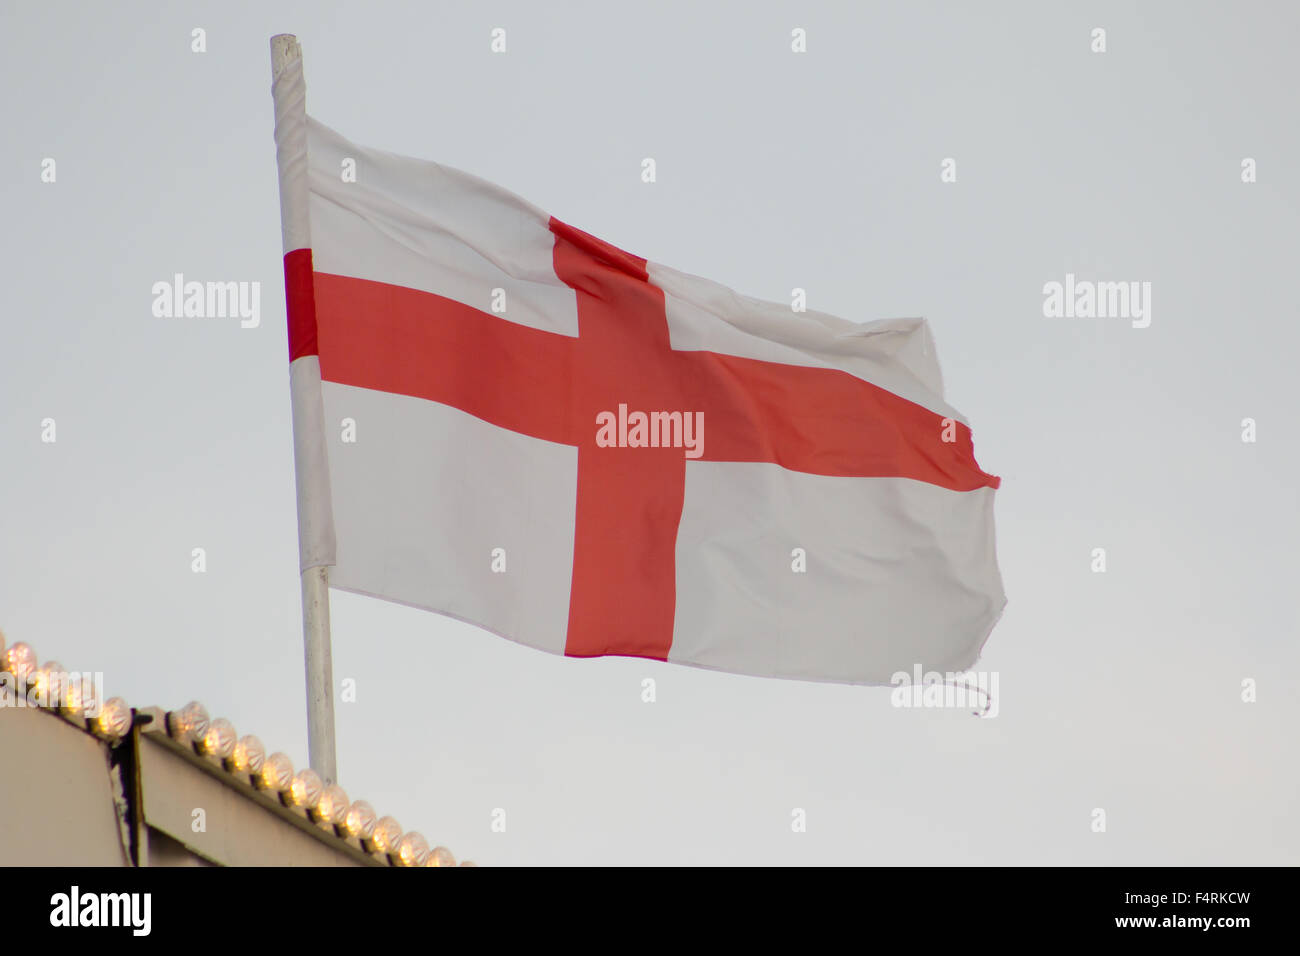 Flag of England (Saint George's Cross) fluttering on a flag pole. Grey sky. Stock Photo